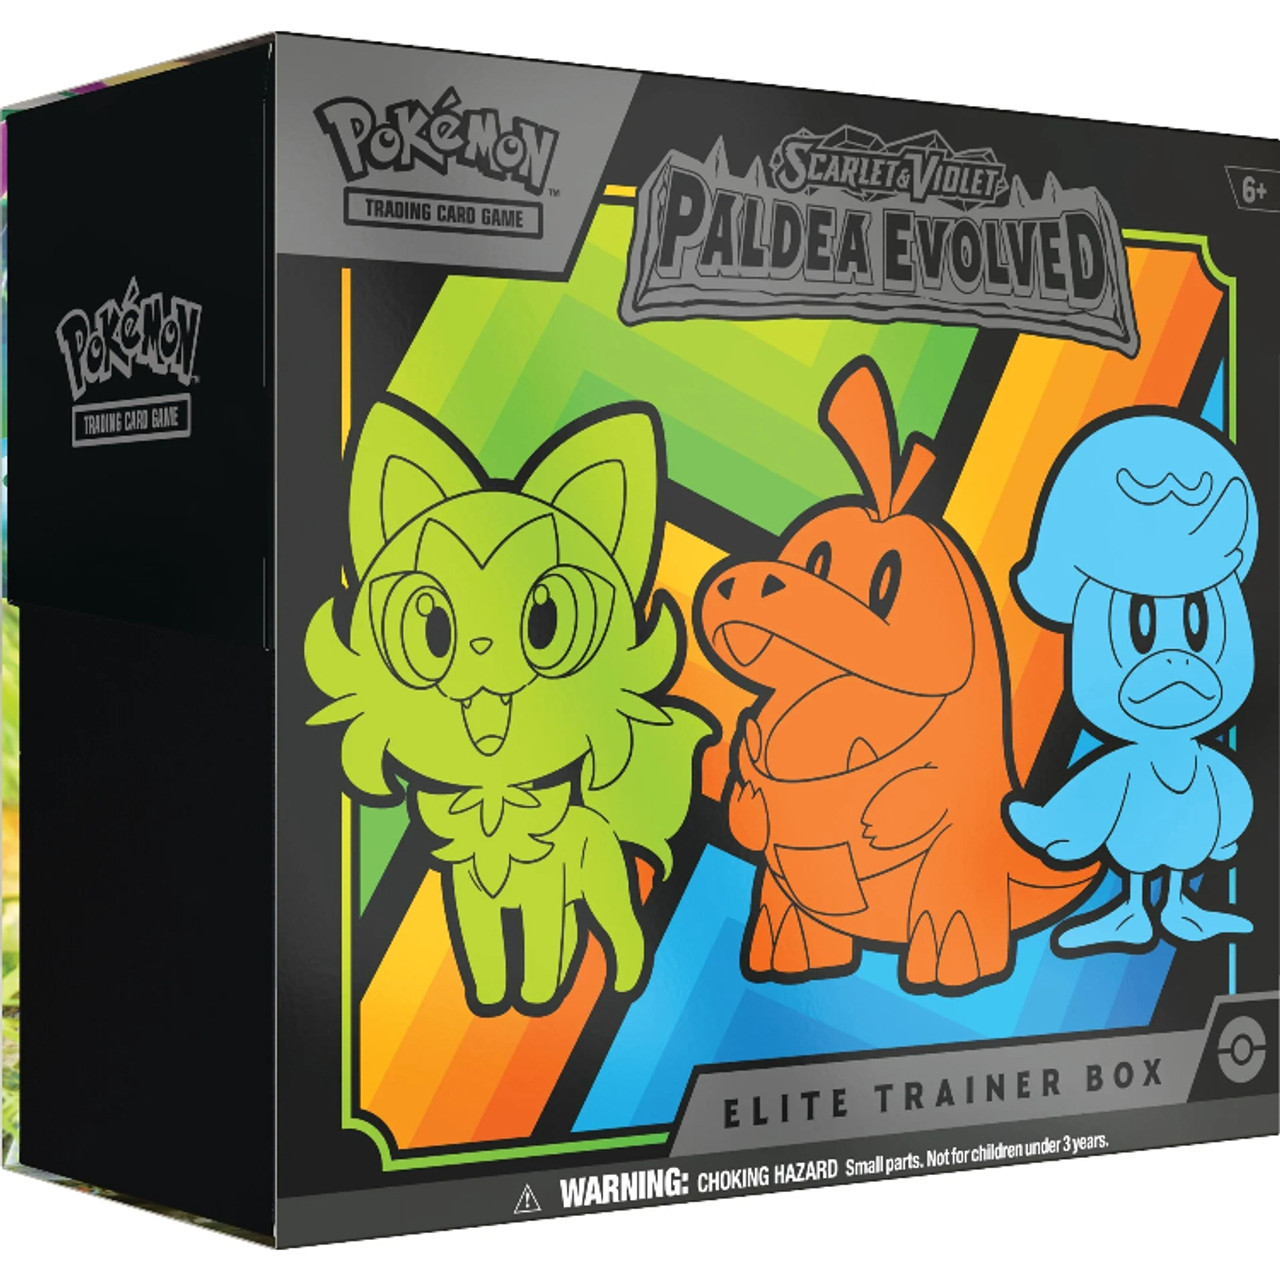 Pokémon TCG: Scarlet & Violet 02 - Paldea Evolved ELITE TRAINER BOX